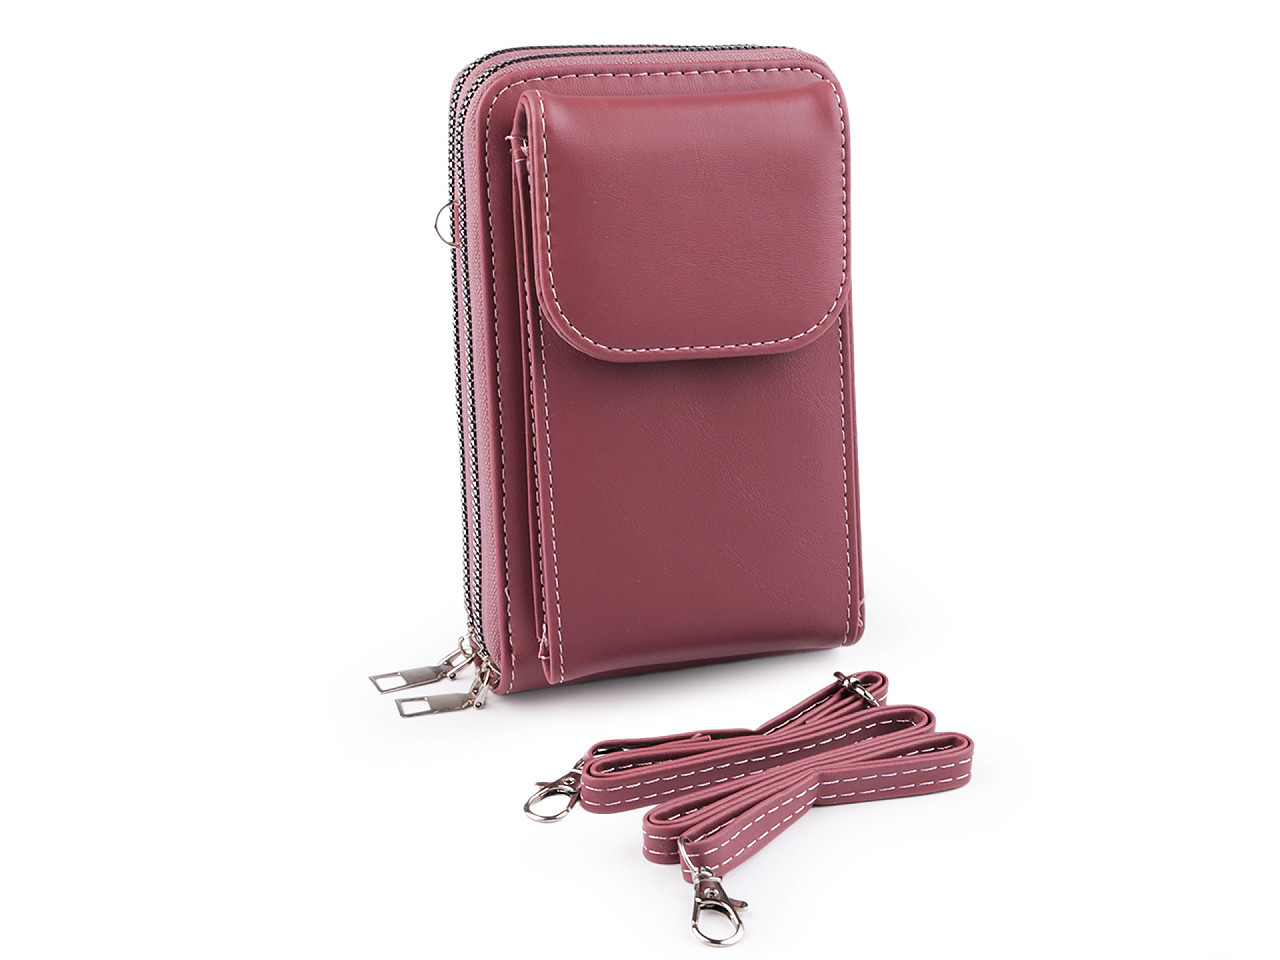 Peněženka s kapsou na mobil přes rameno crossbody 11x18cm, barva 2 starorůžová